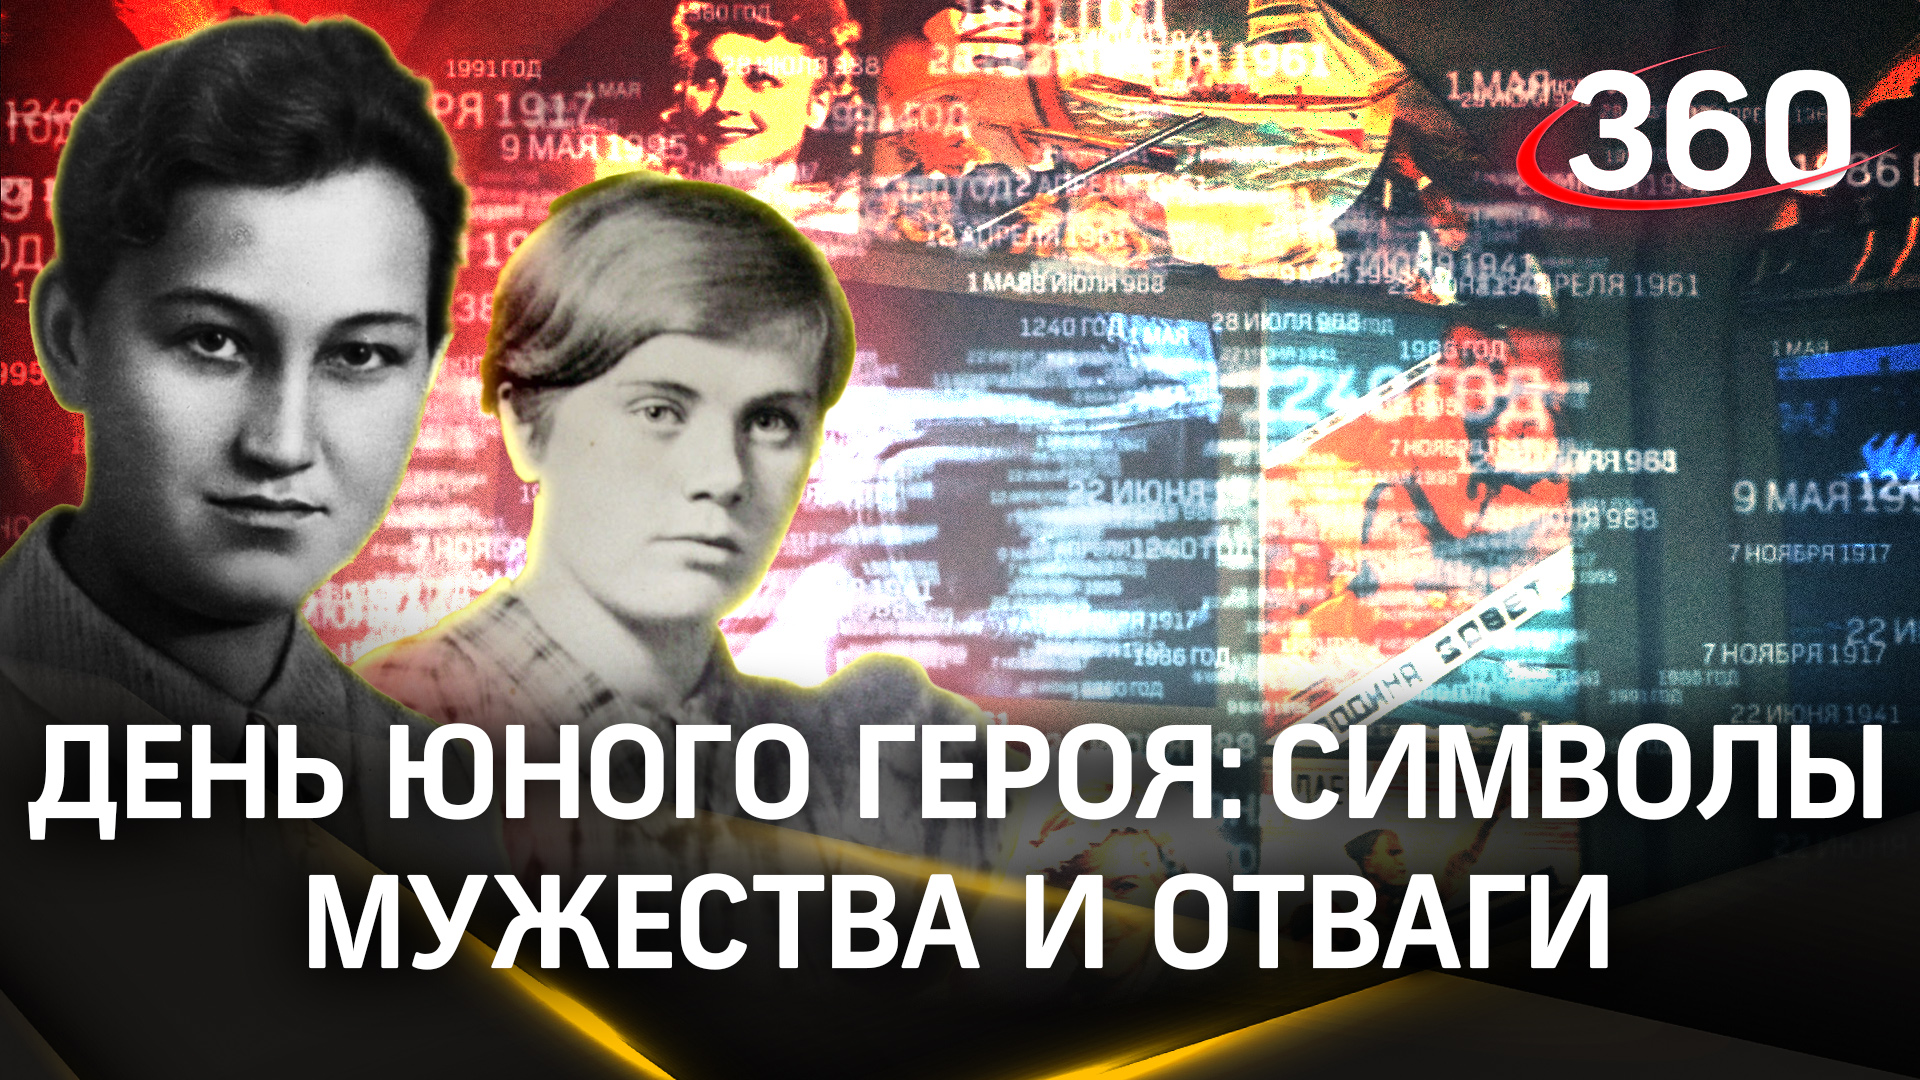 Знаменательная дата для Московской области: День юного героя. История двух юных партизанок